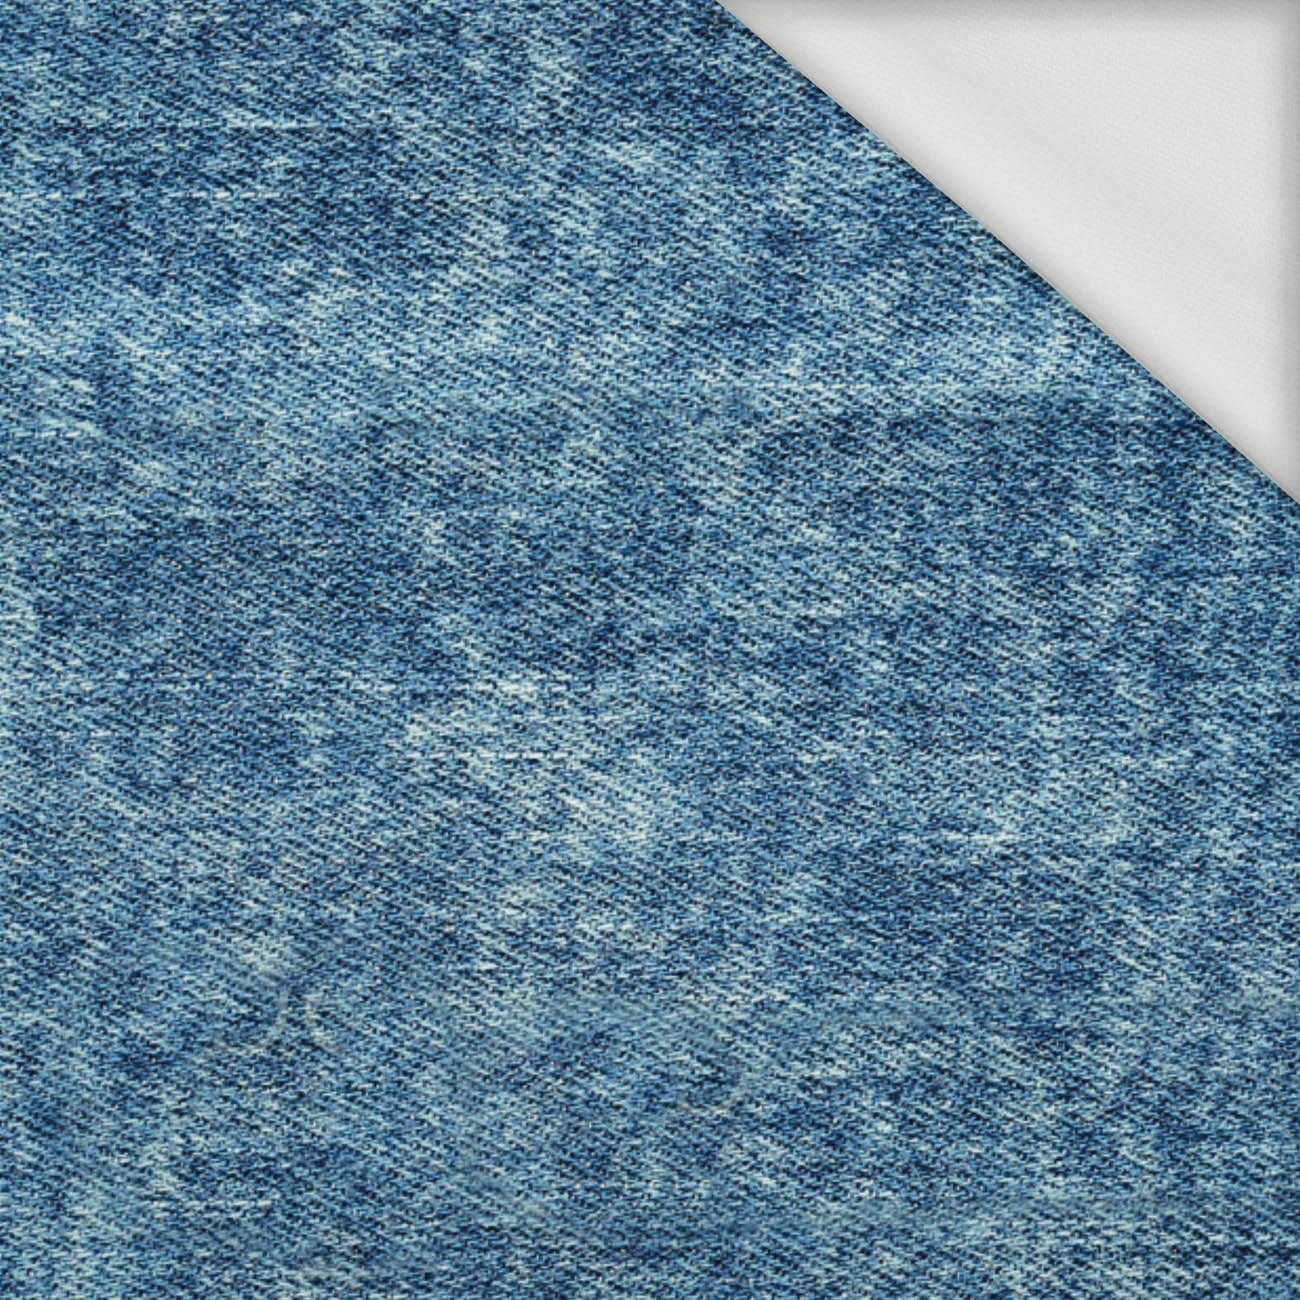 PRZECIERANY JEANS (Atlantic Blue) - dresówka pętelkowa